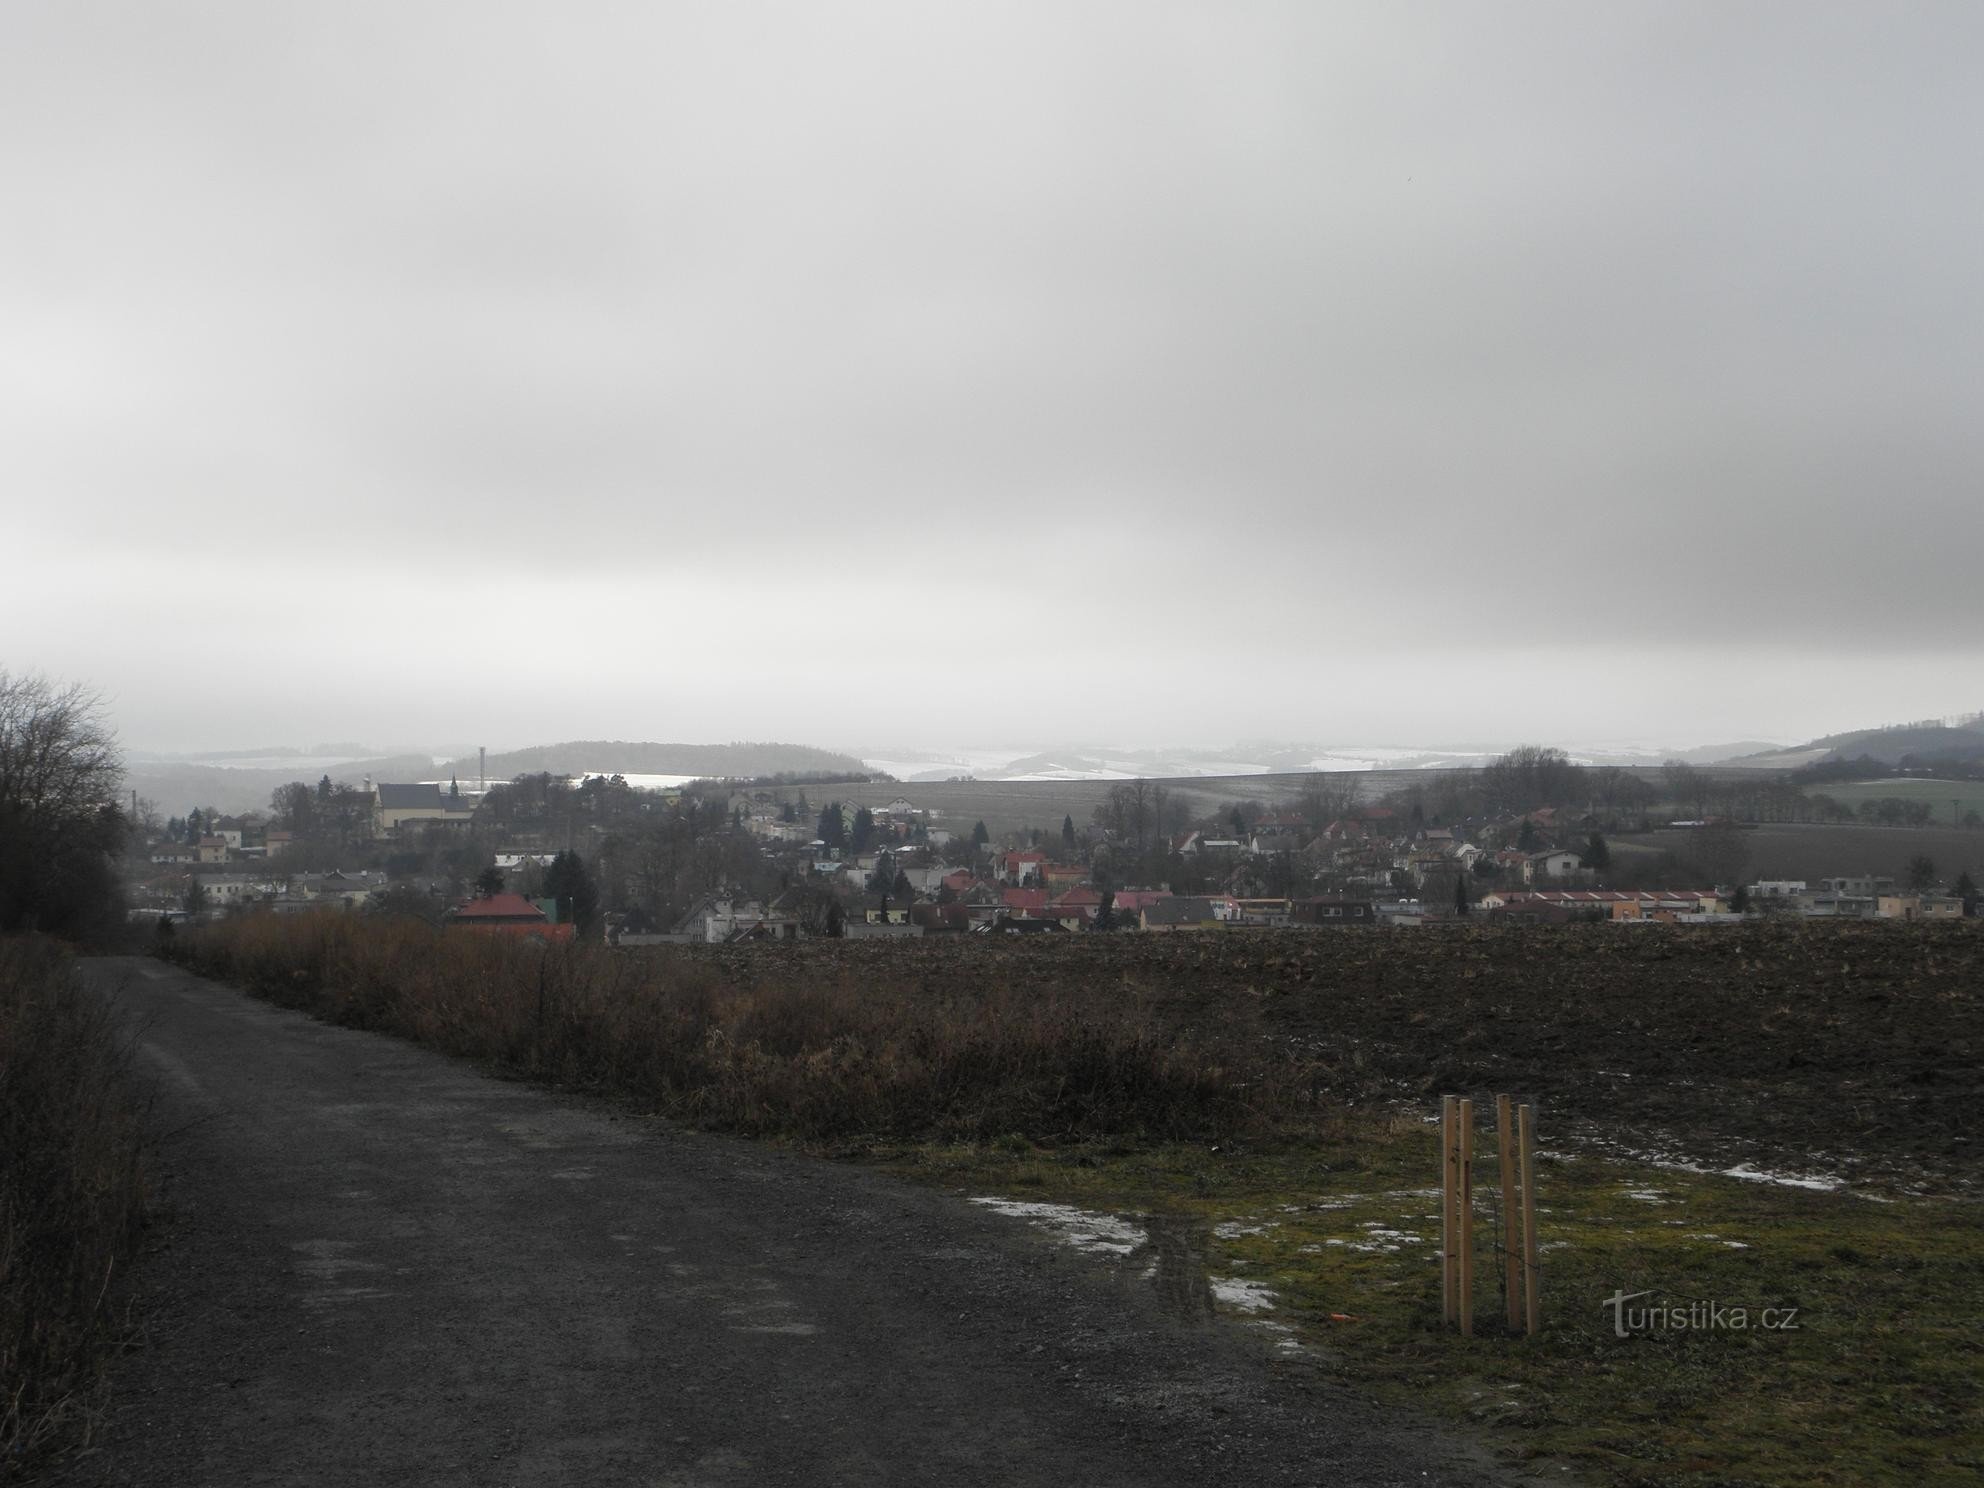 View of Fulnek from the cross - 1.1.2012/XNUMX/XNUMX